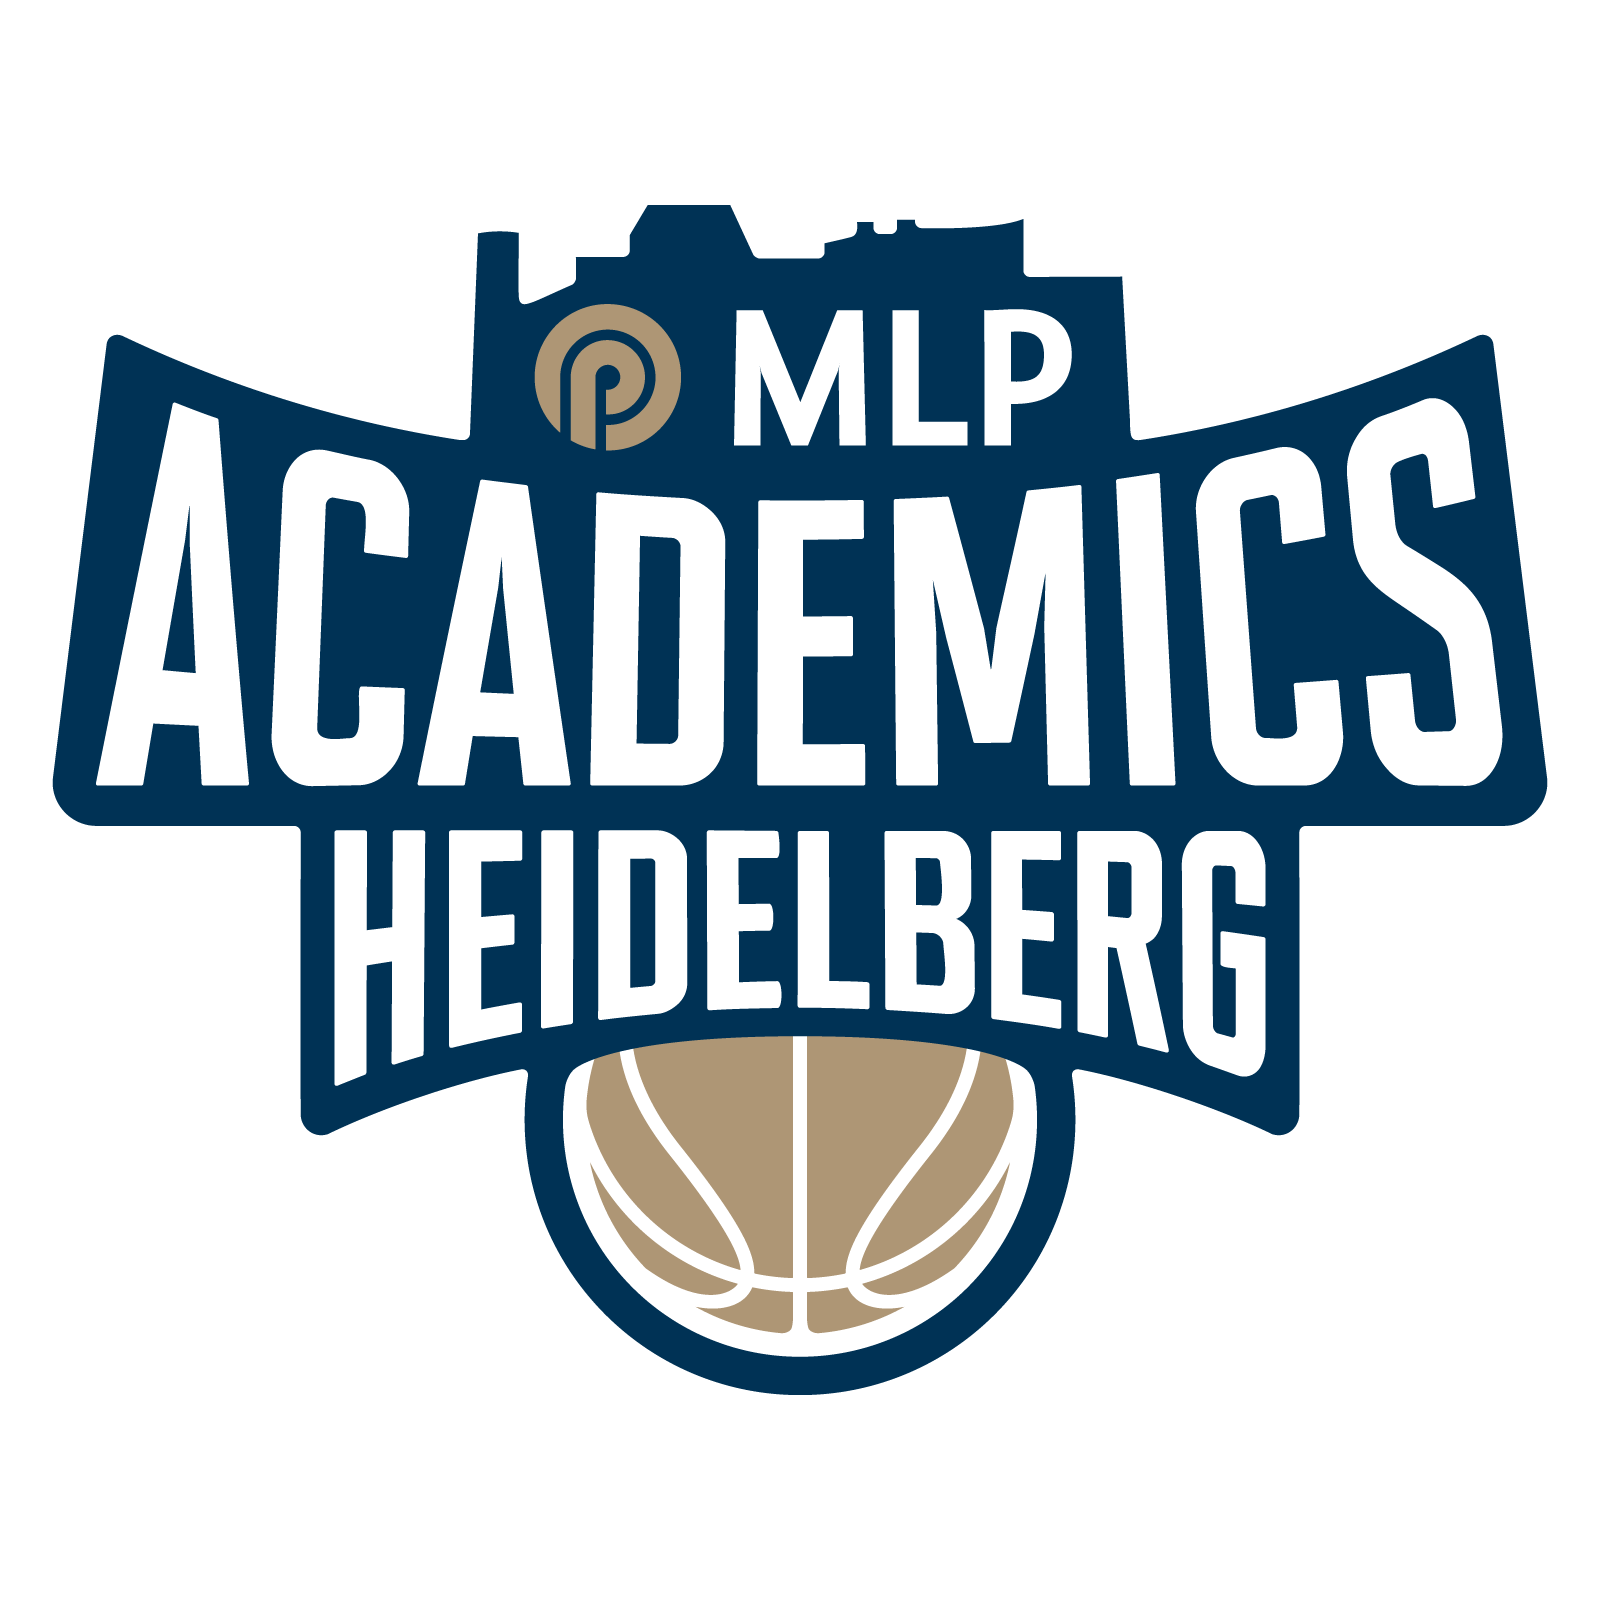 MLP Academics Heidelberg Logo